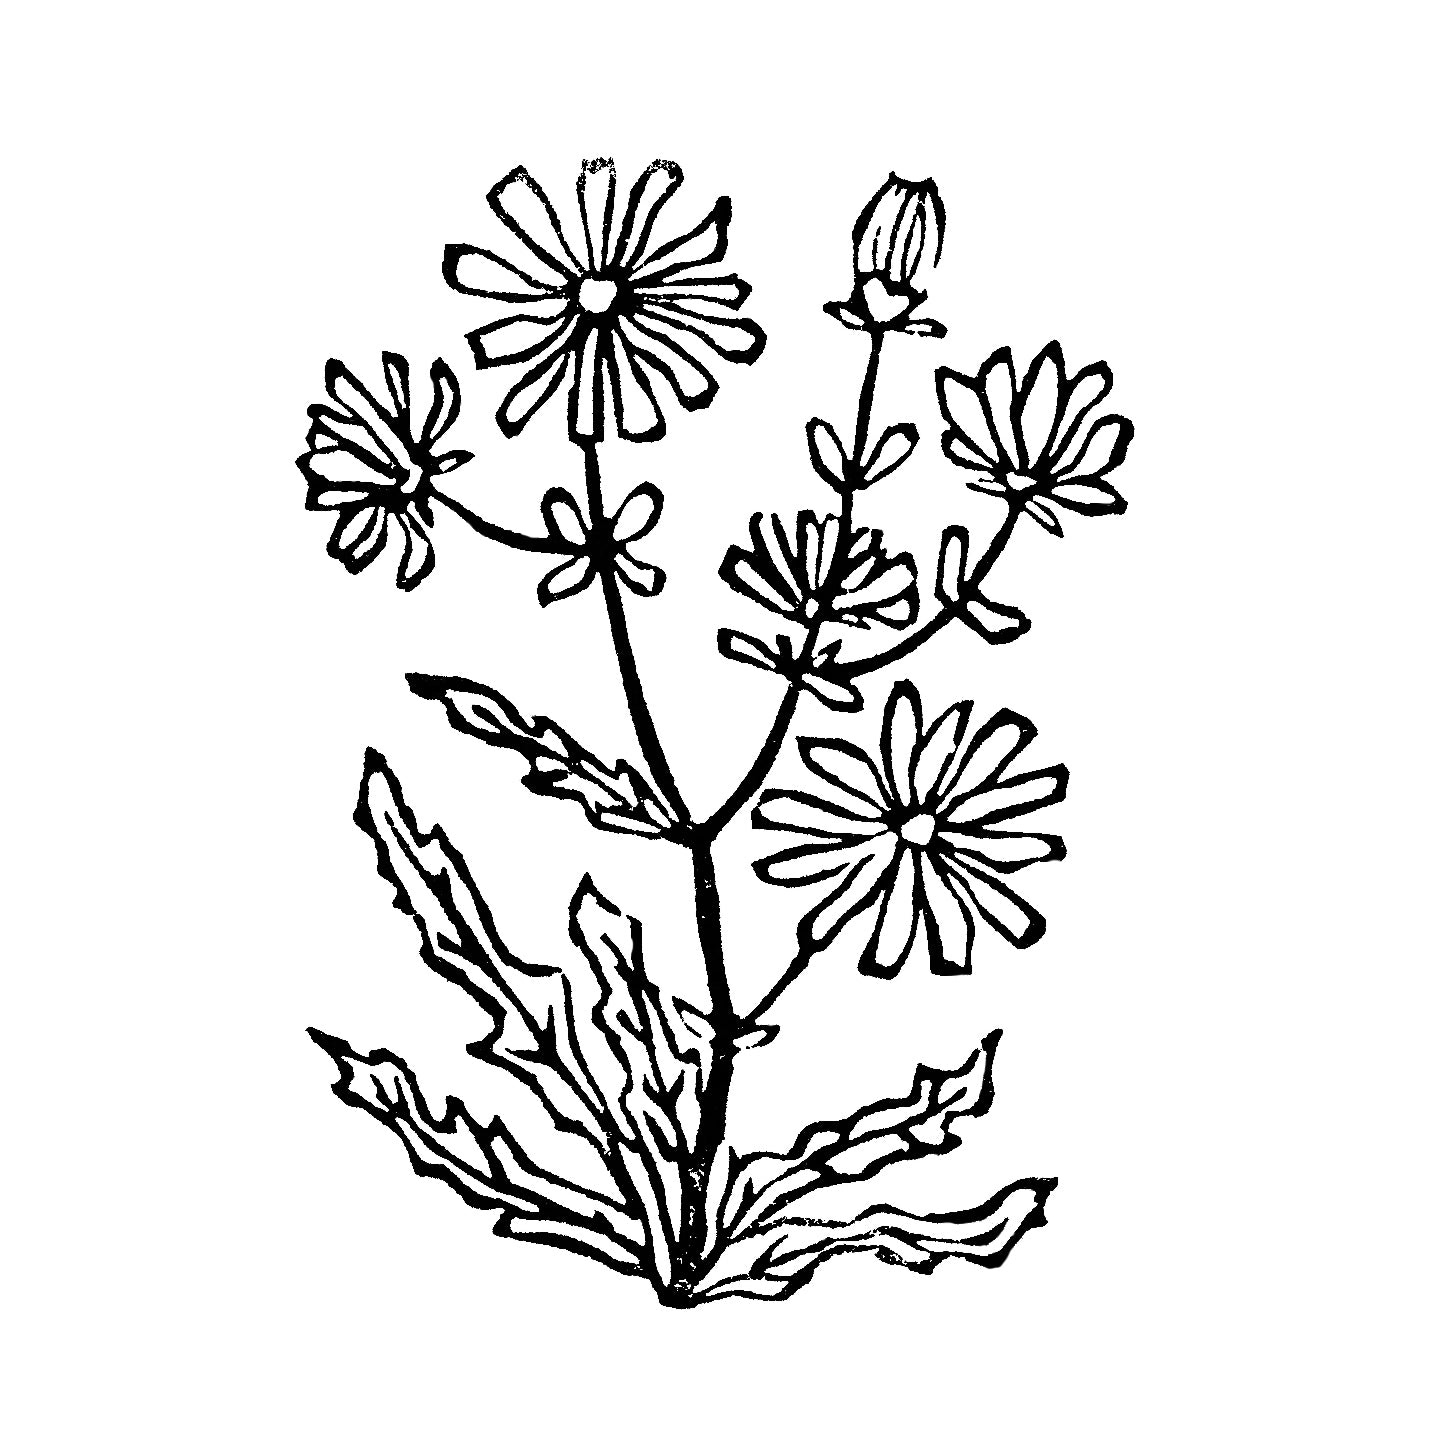 Chicory art.  Michigan Wildflowers Original Block Print Series by Natalia Wohletz of Peninsula Prints, Mackinac Island.